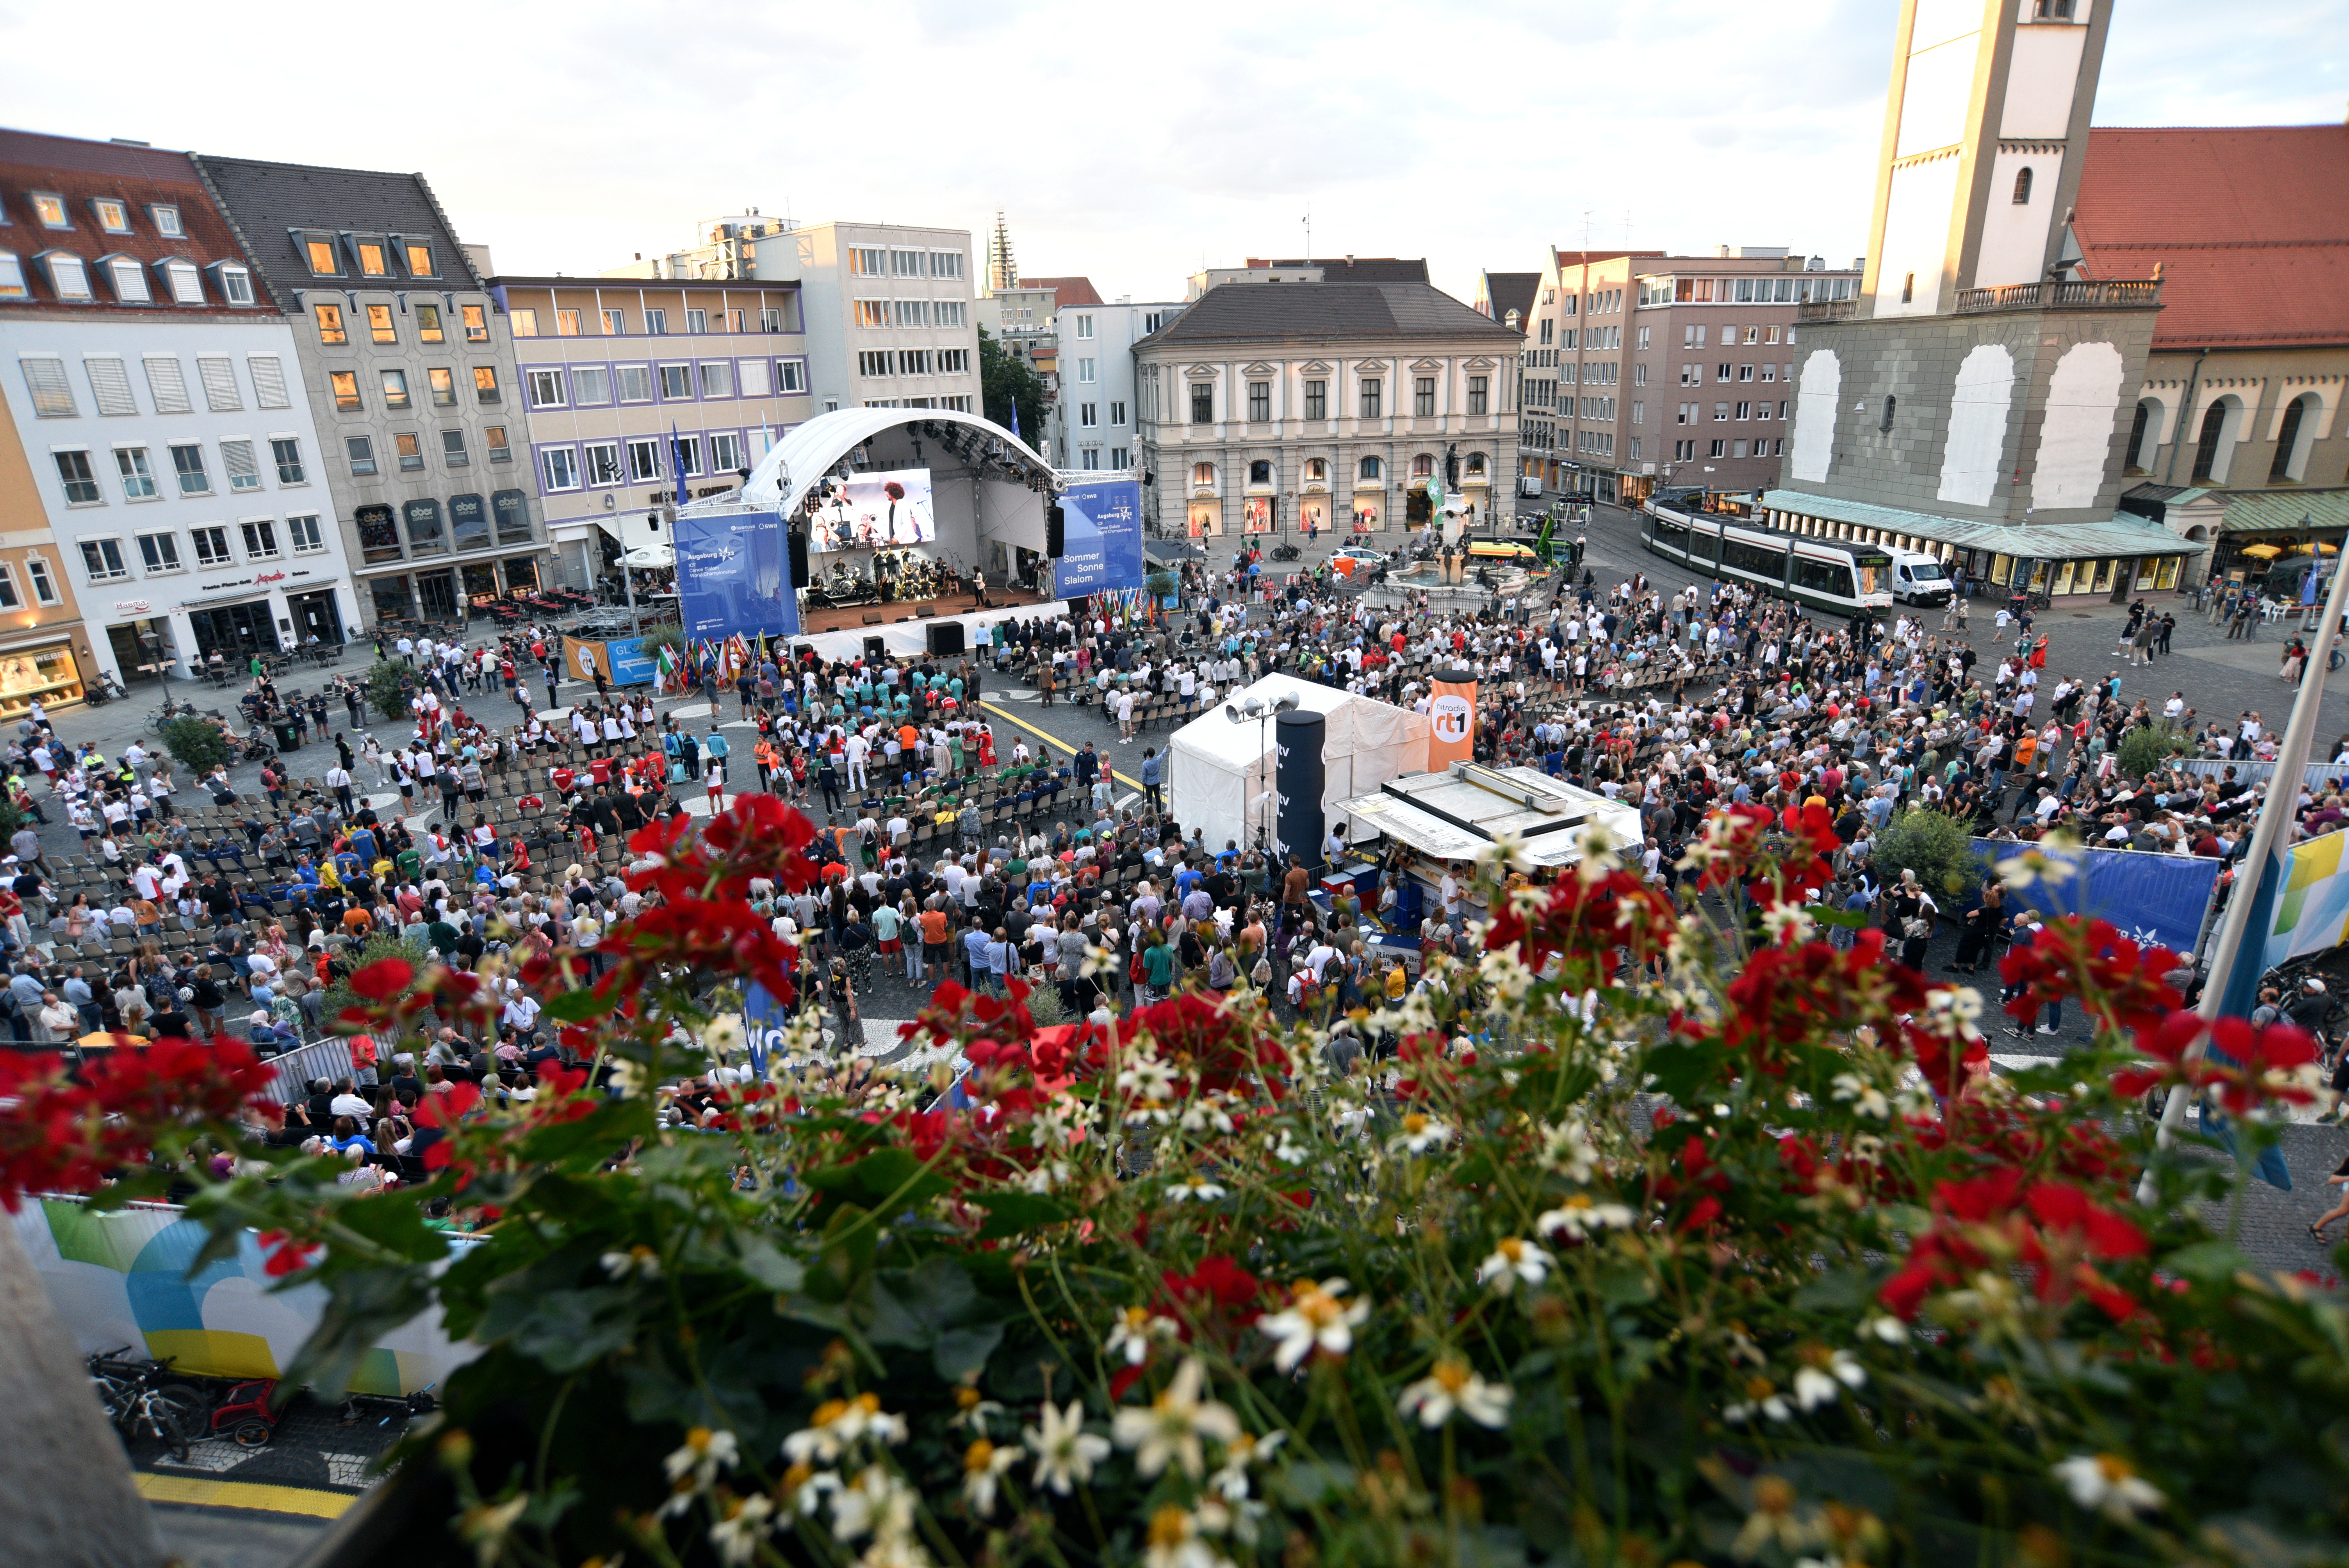 Eröffnungsfeier der Kanusalom-WM 2022 auf dem Rathausplatz. Etwa Tausend Menschen sitzen im Publikum vor einer großen überdachten Bühne.